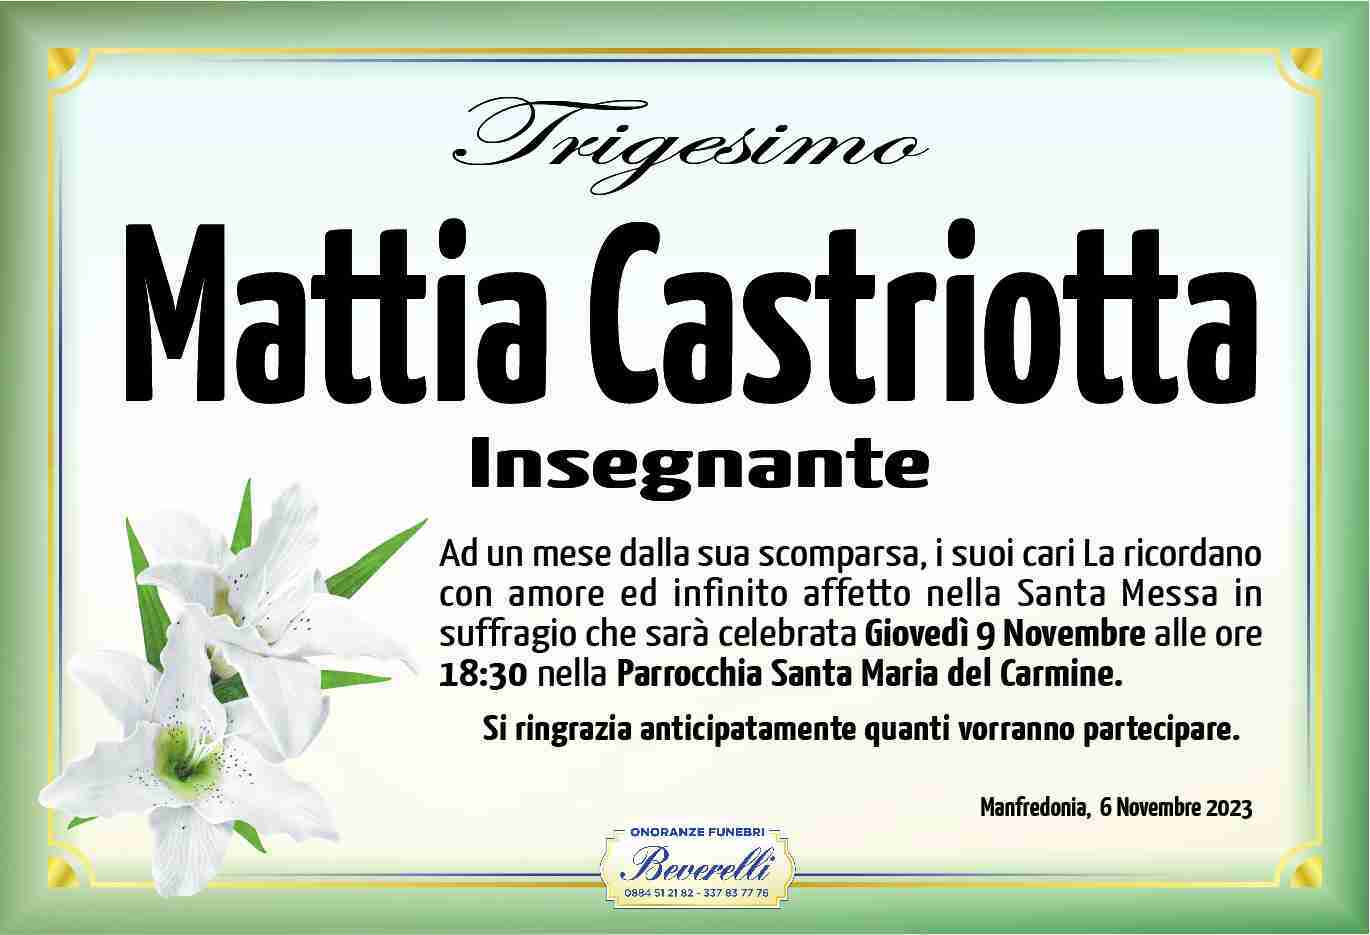 Mattia Castriotta